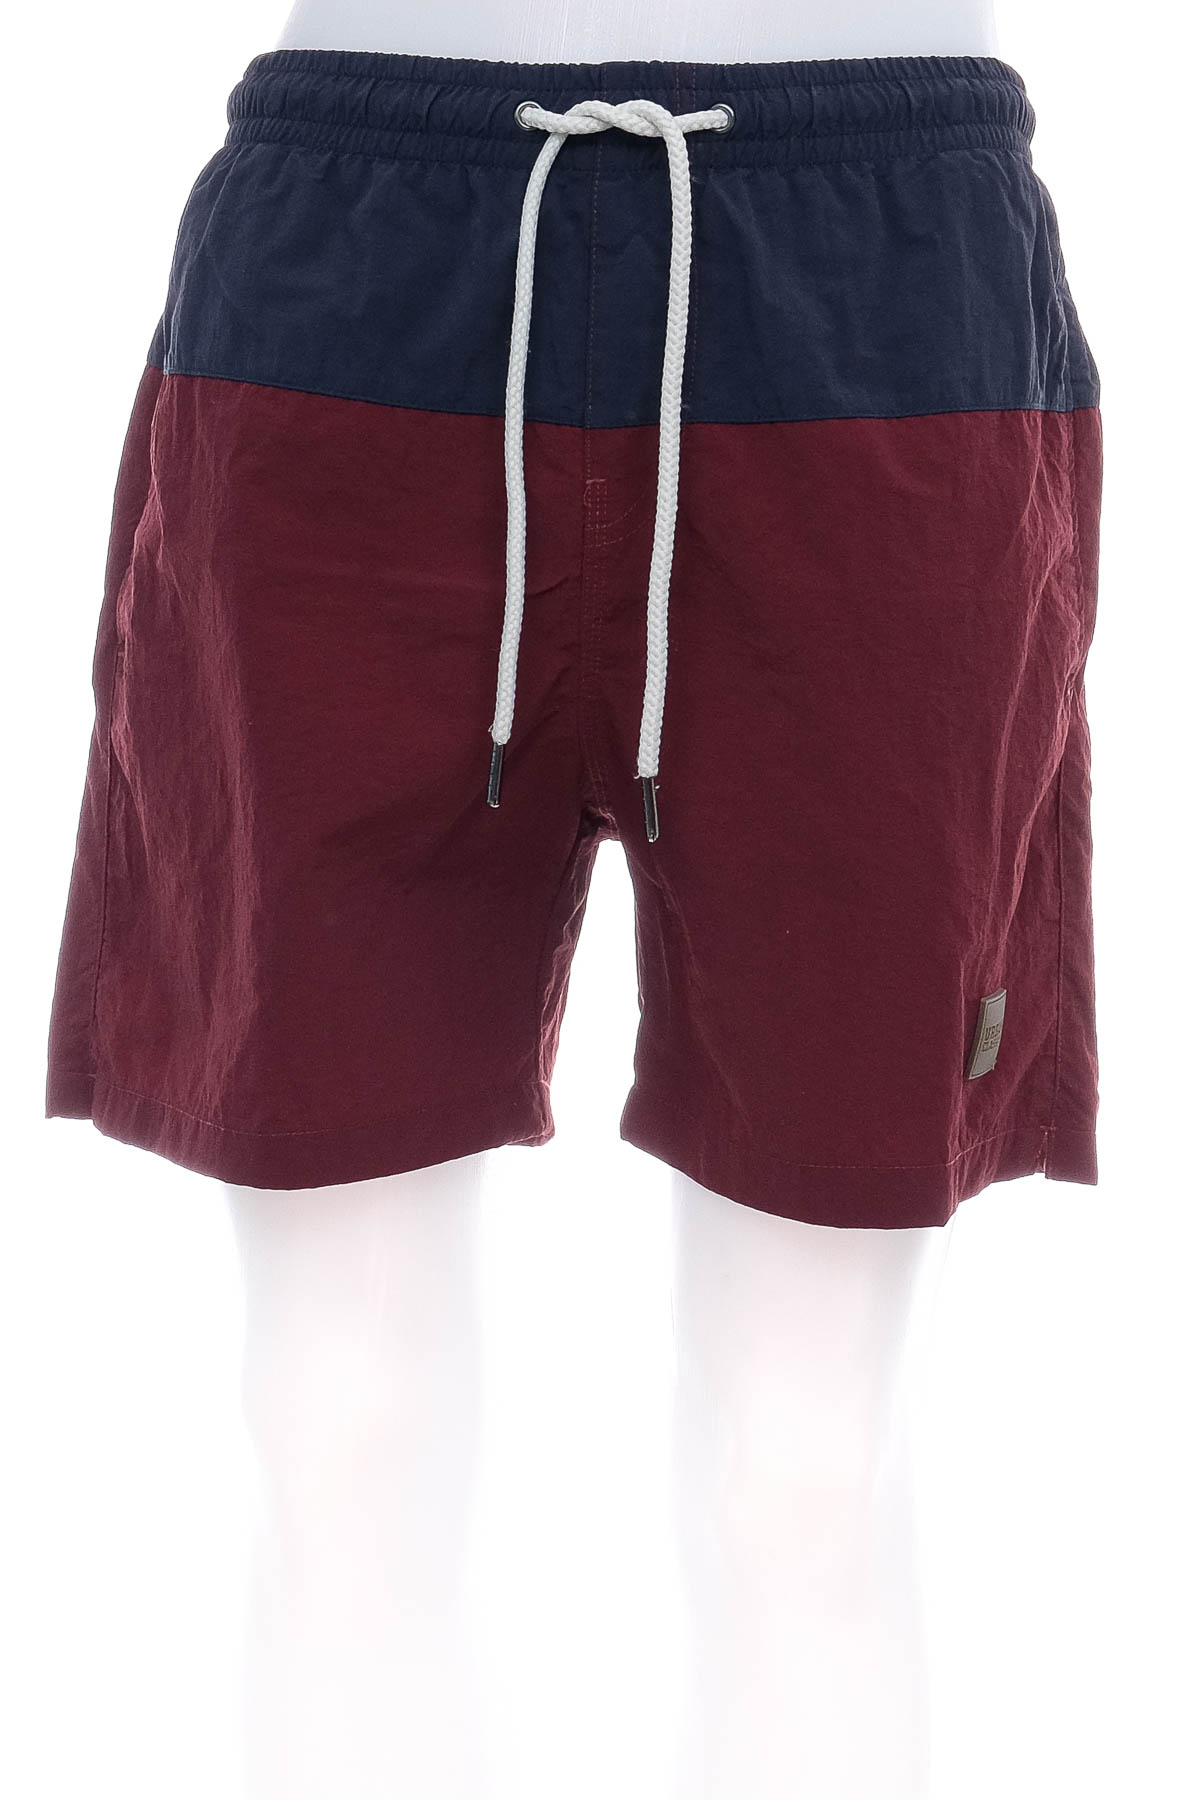 Men's shorts - URBAN CLASSICS - 0